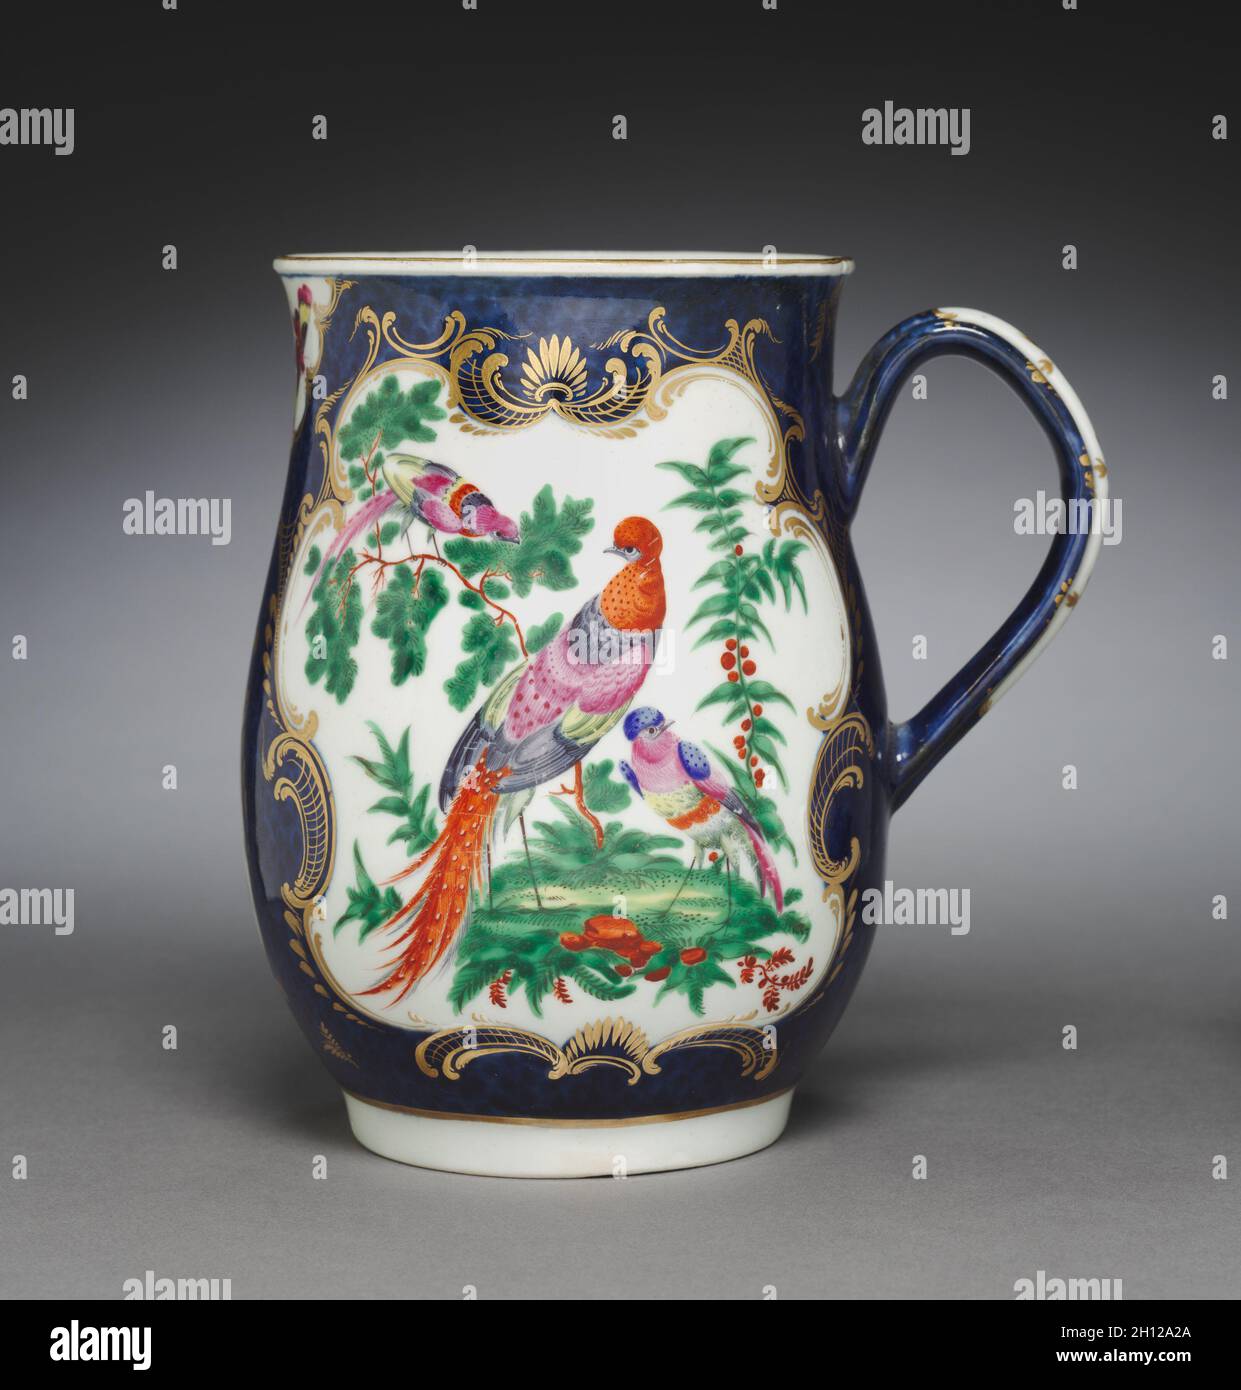 Il boccale , c. 1770. Inghilterra, XVIII secolo. La ceramica; complessivo: 15 x 14,5 x 11,1 cm (5 7/8 x 5 11/16 x 4 3/8 in.). Foto Stock